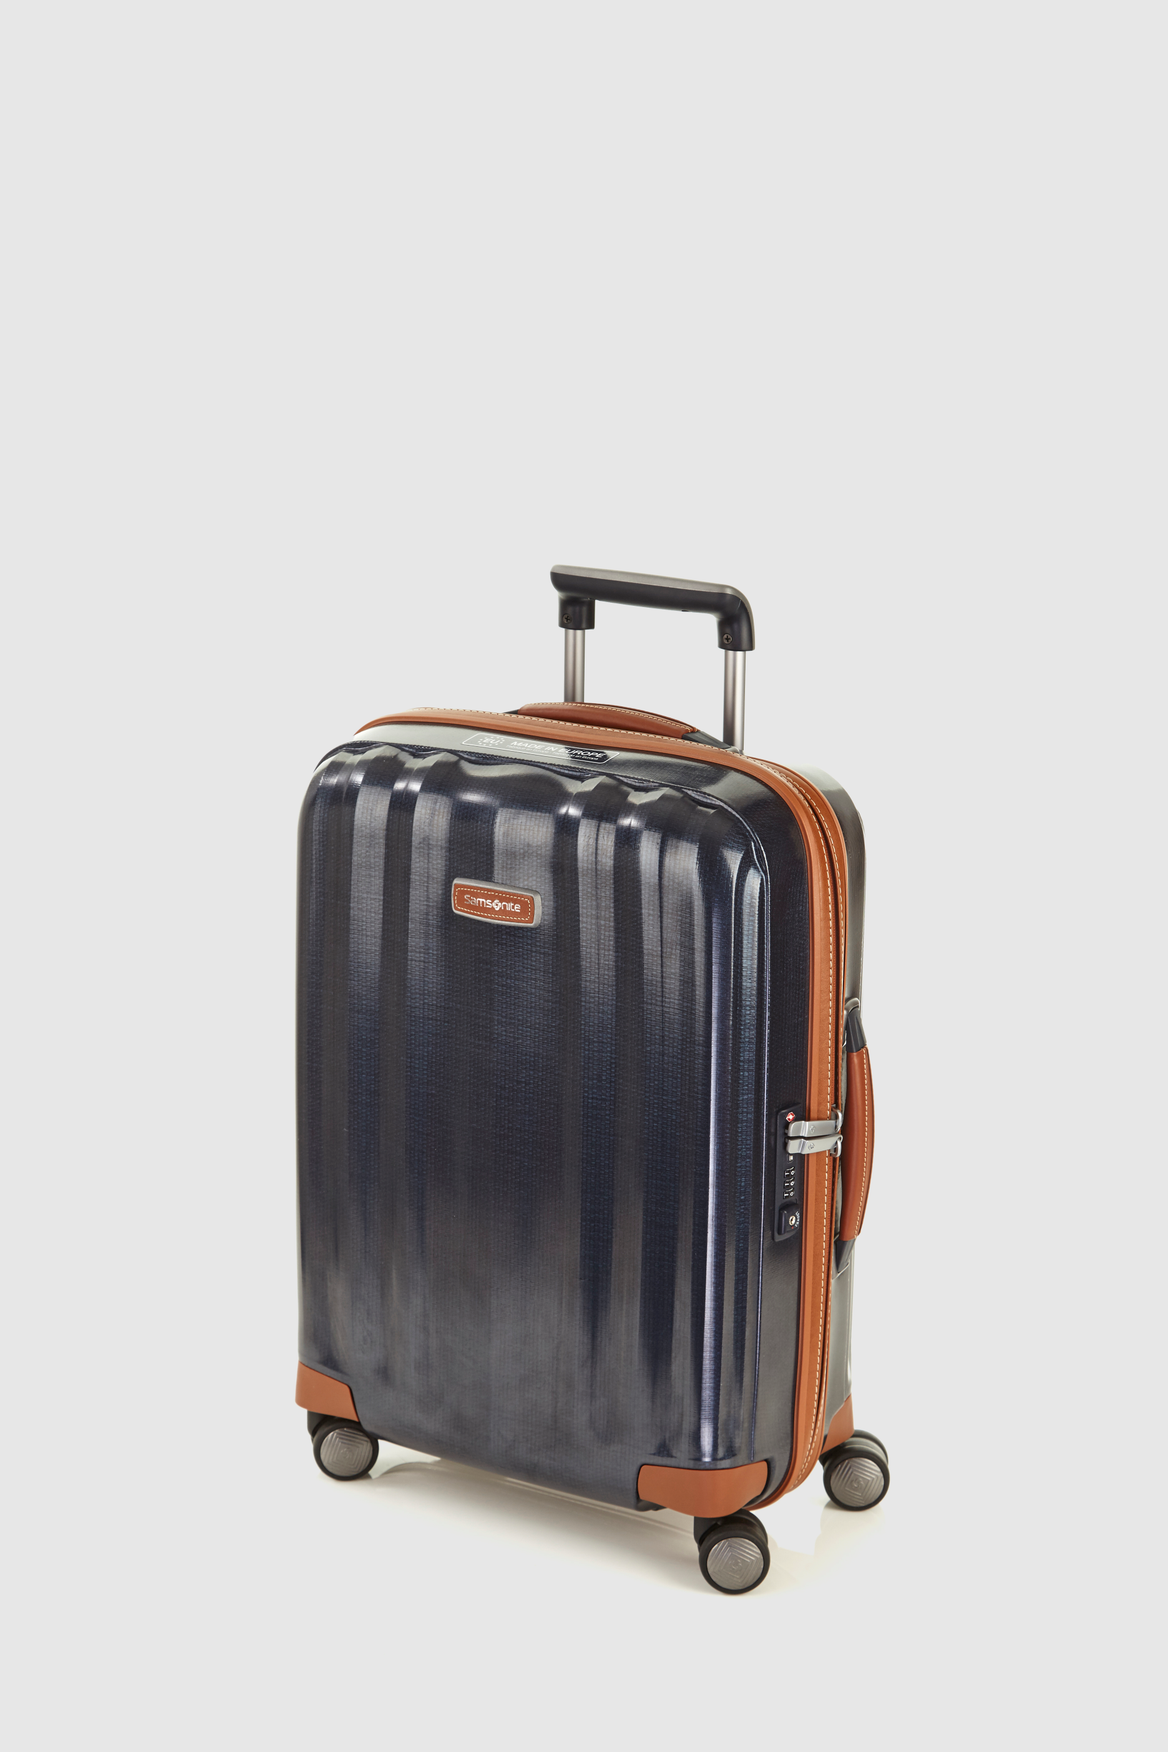 Samsonite Cube Deluxe 55cm Suitcase – Strandbags